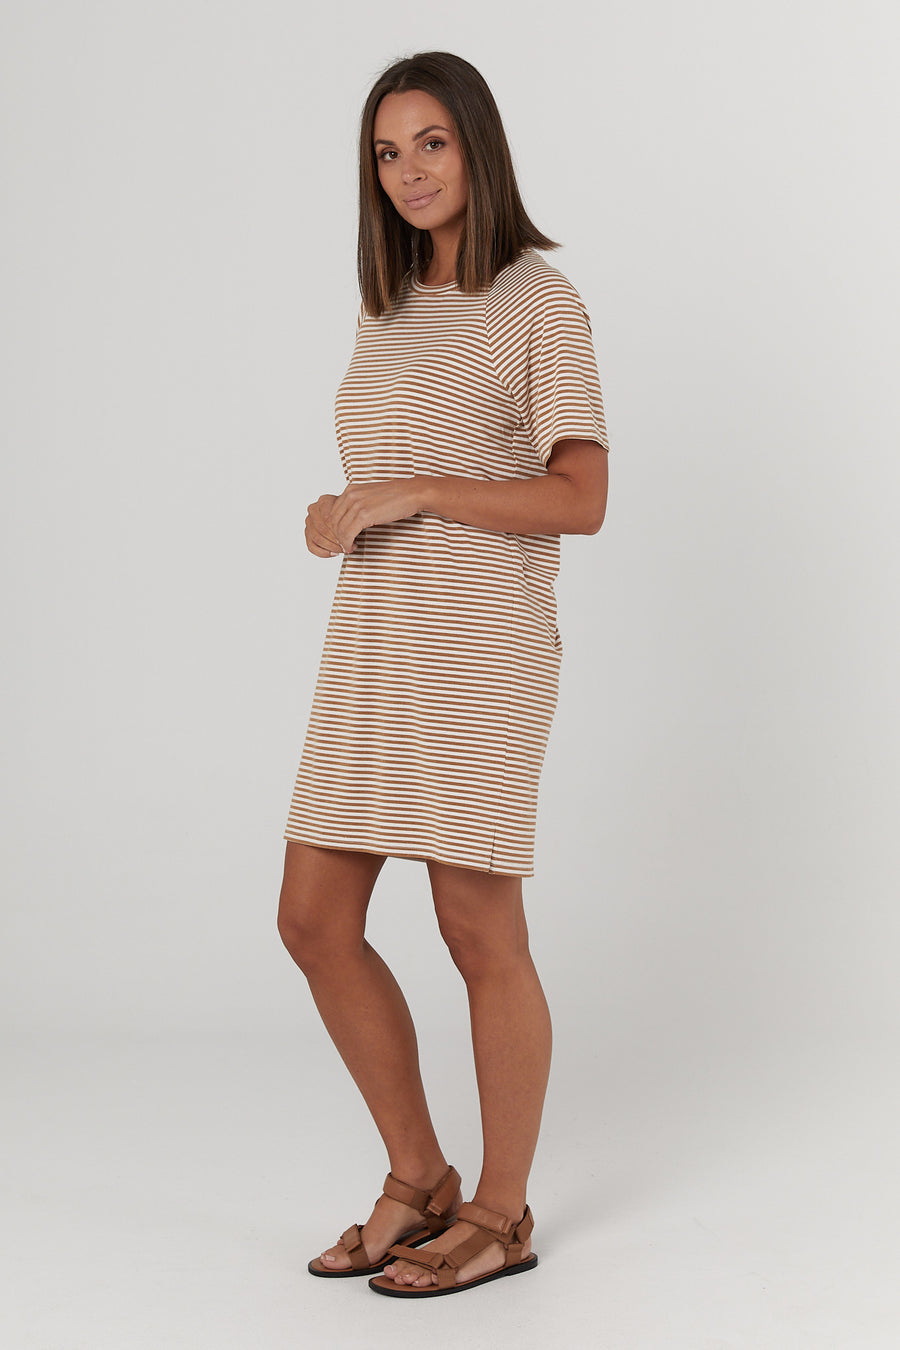 Toulouse Dress (Tan/White Stripe) - FINAL SALE